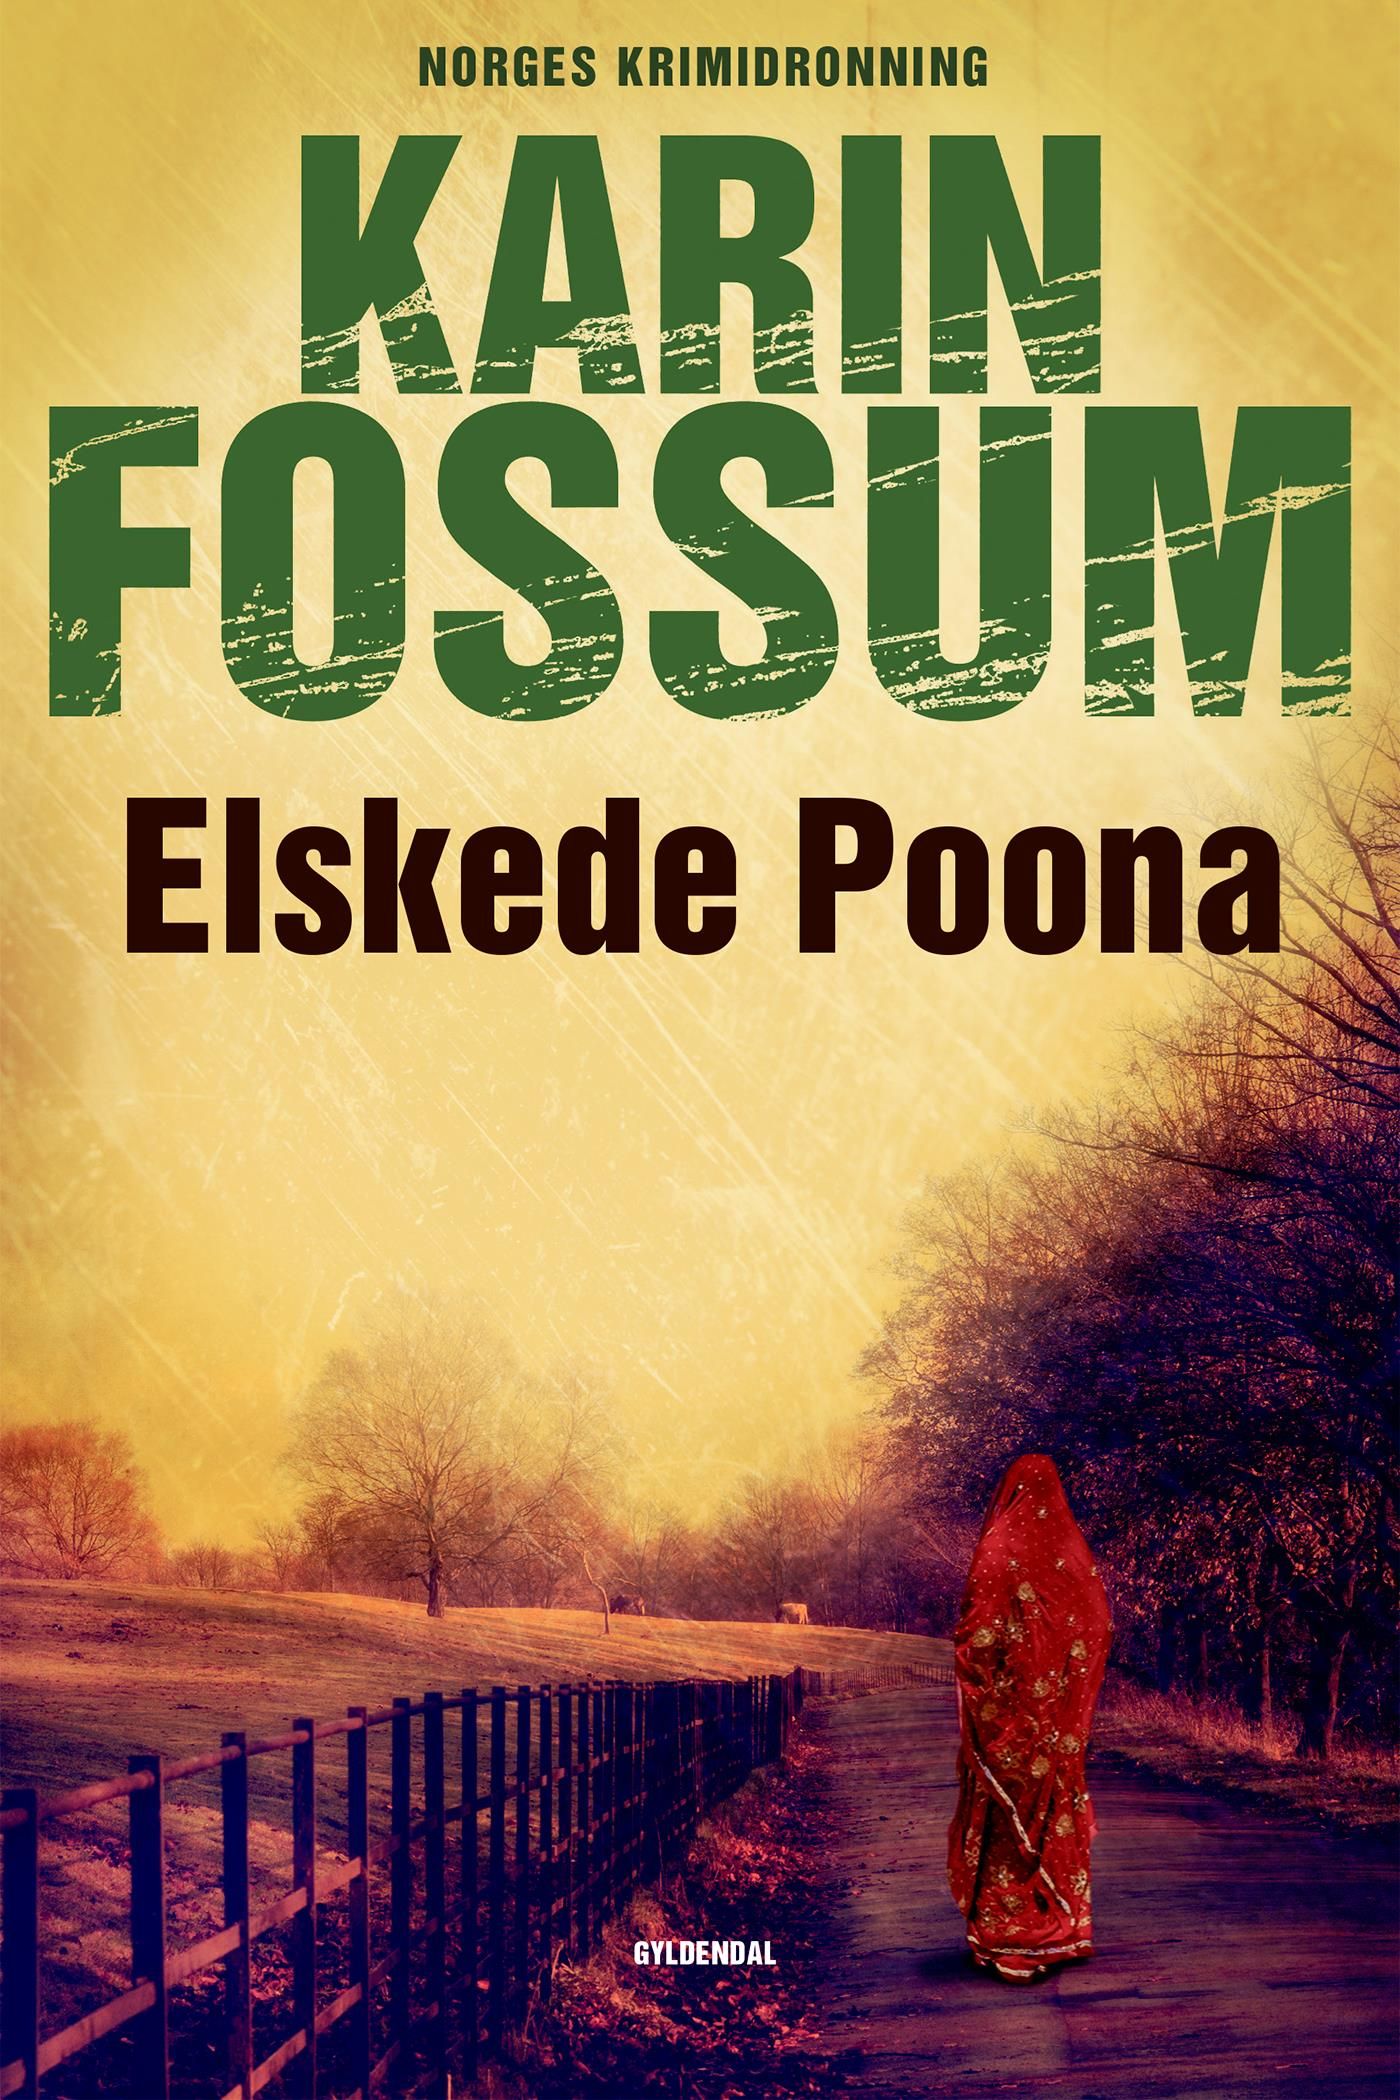 Elskede Poona, e-bok av Karin Fossum